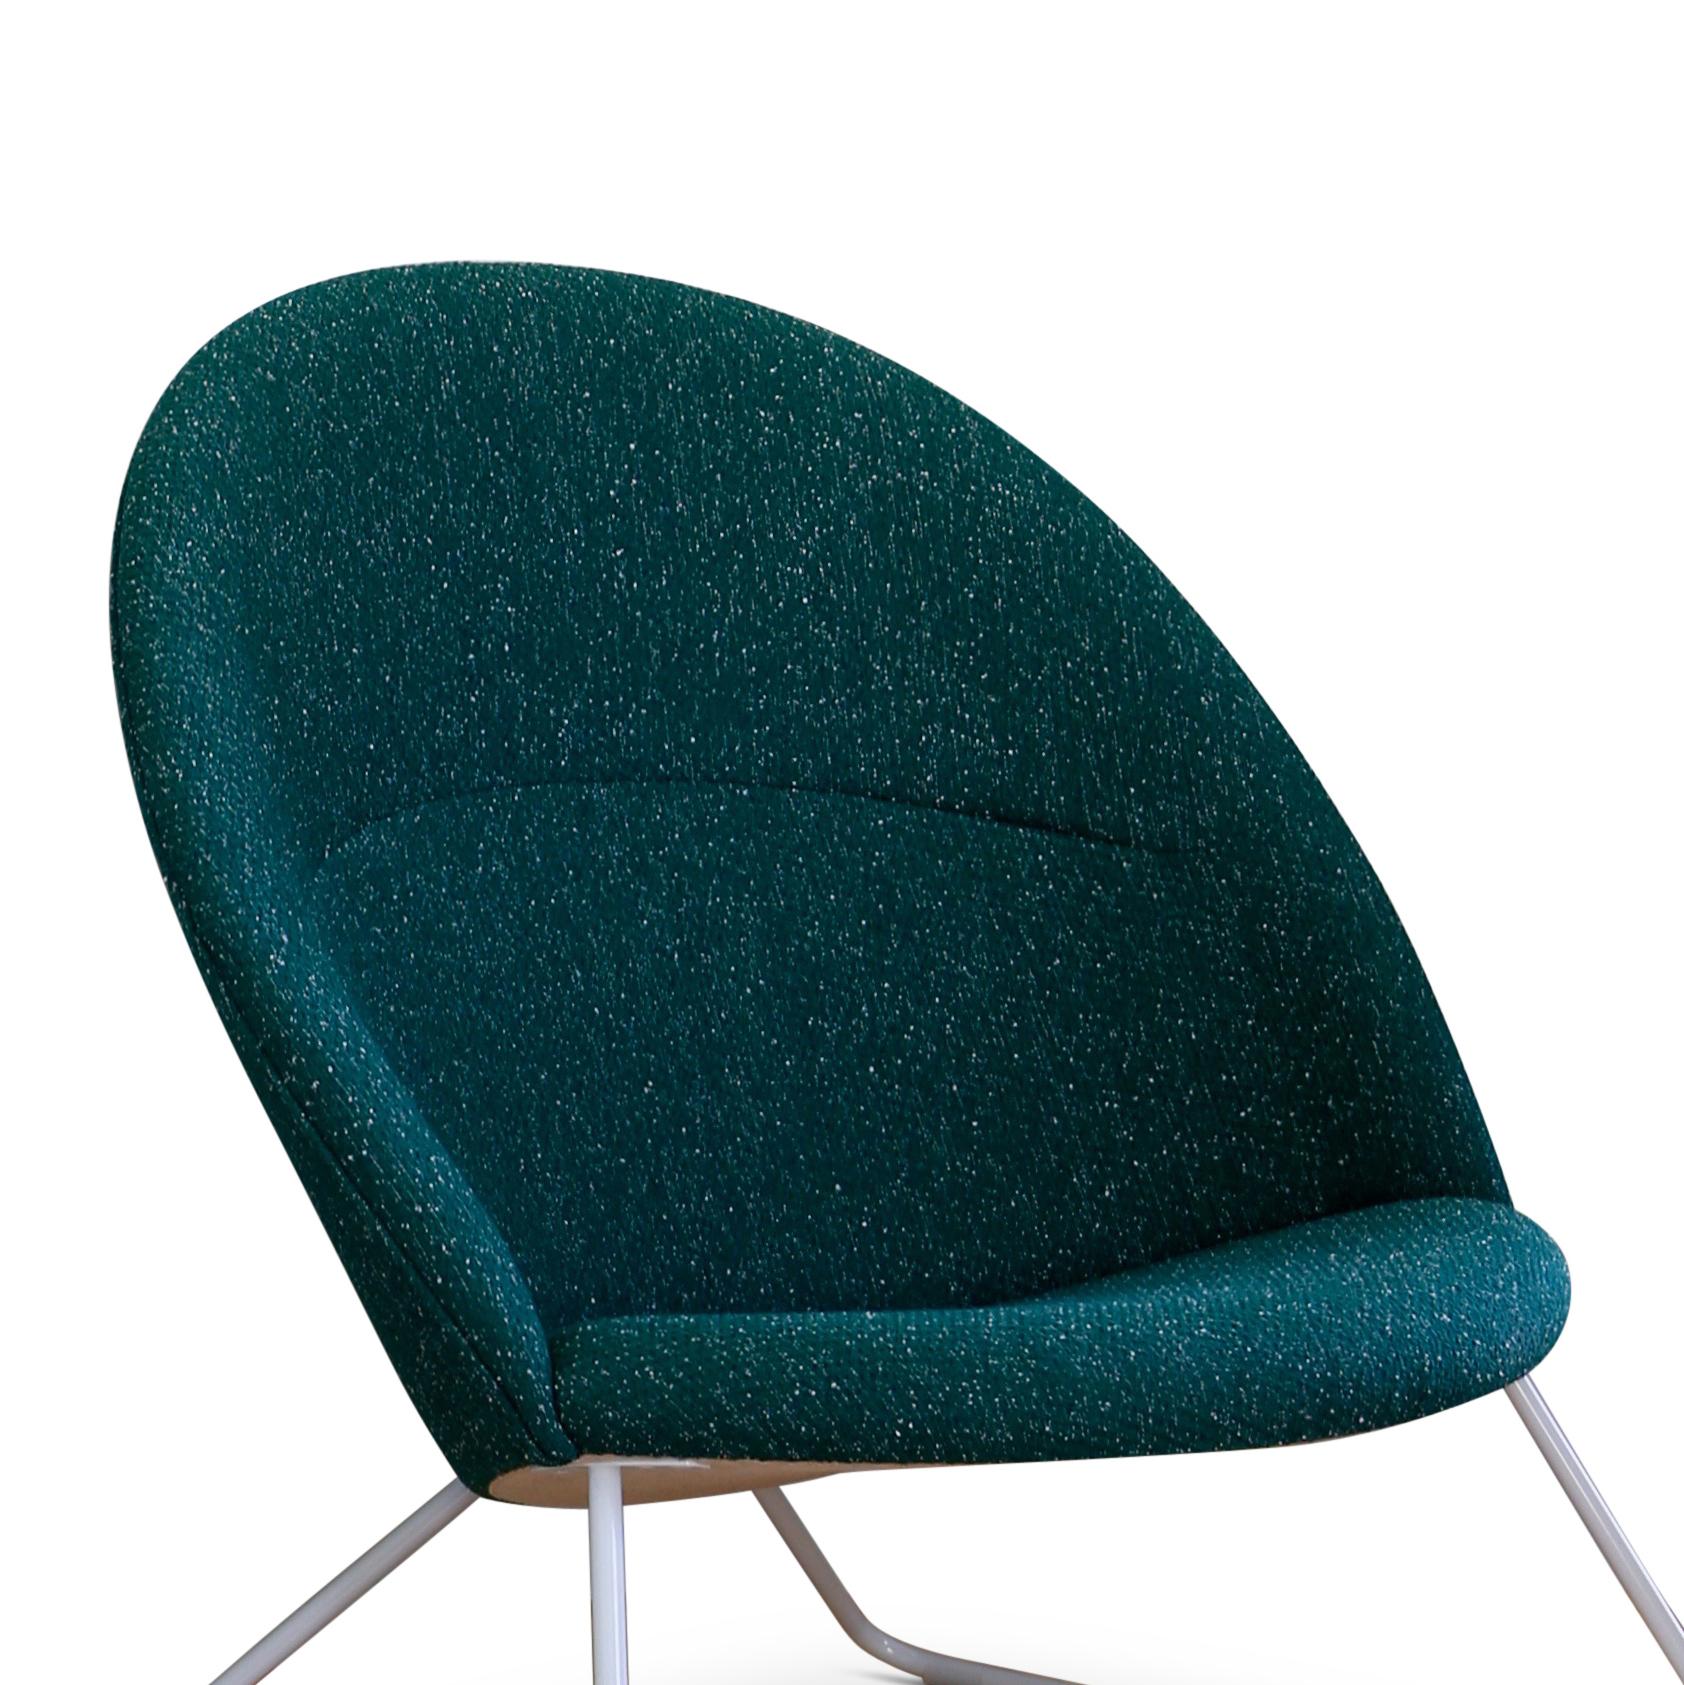 Une collection a relancé le fauteuil Dennie, qui a été conçu par Nanna et Jørgen Ditzel en 1956 pour Fritz Hansen. La chaise Dennie est joliment complétée par un pouf et une petite table.

Nanna Ditzel, qui était l'un des designers de meubles